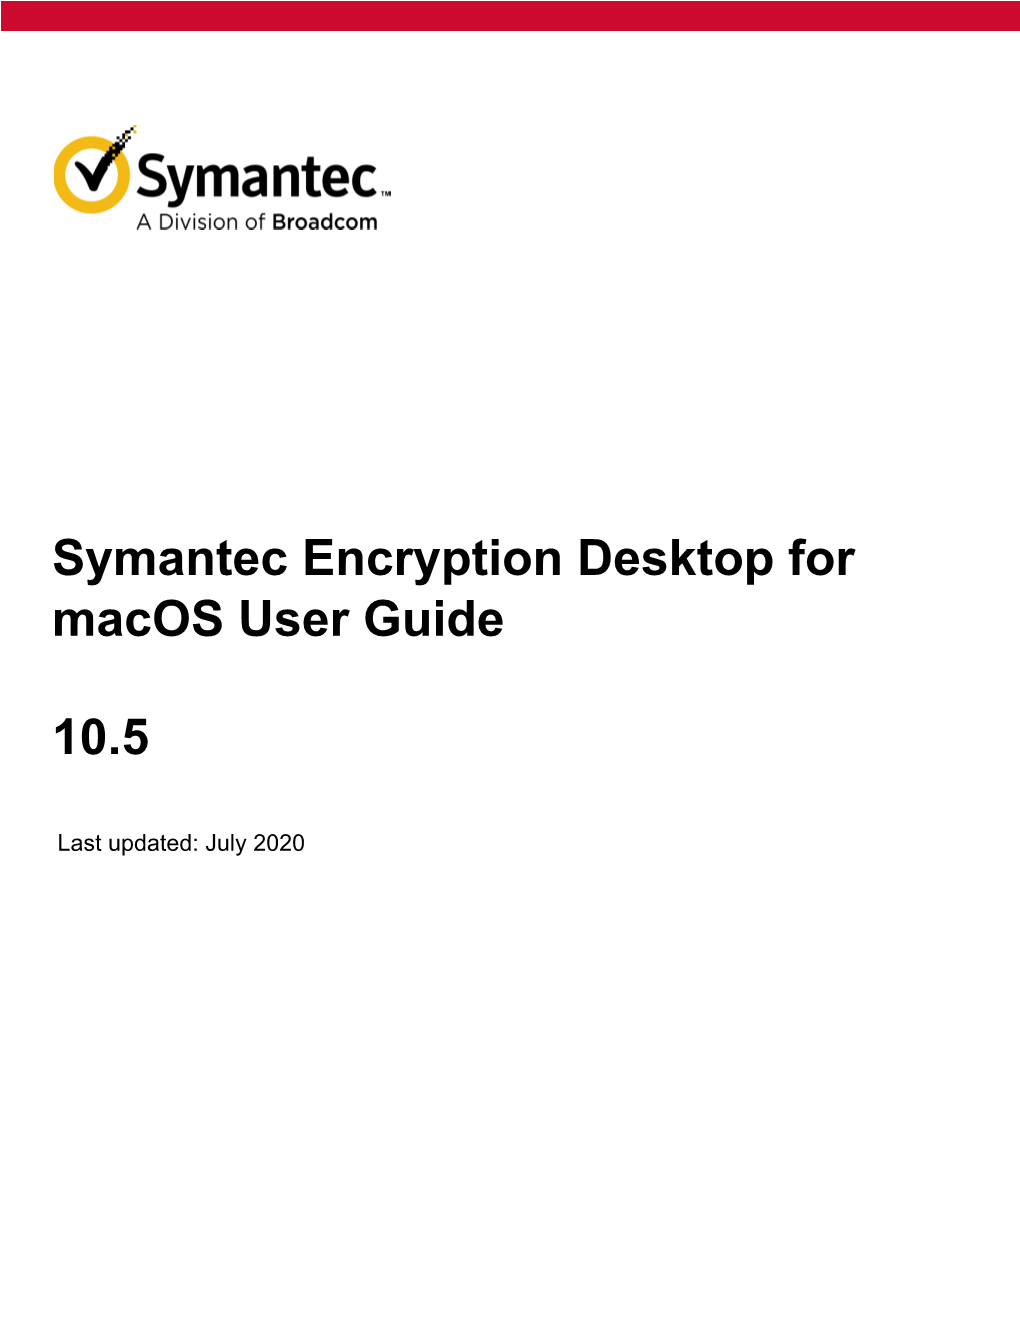 Symantec Encryption Desktop 10.5 for Macos User Guide